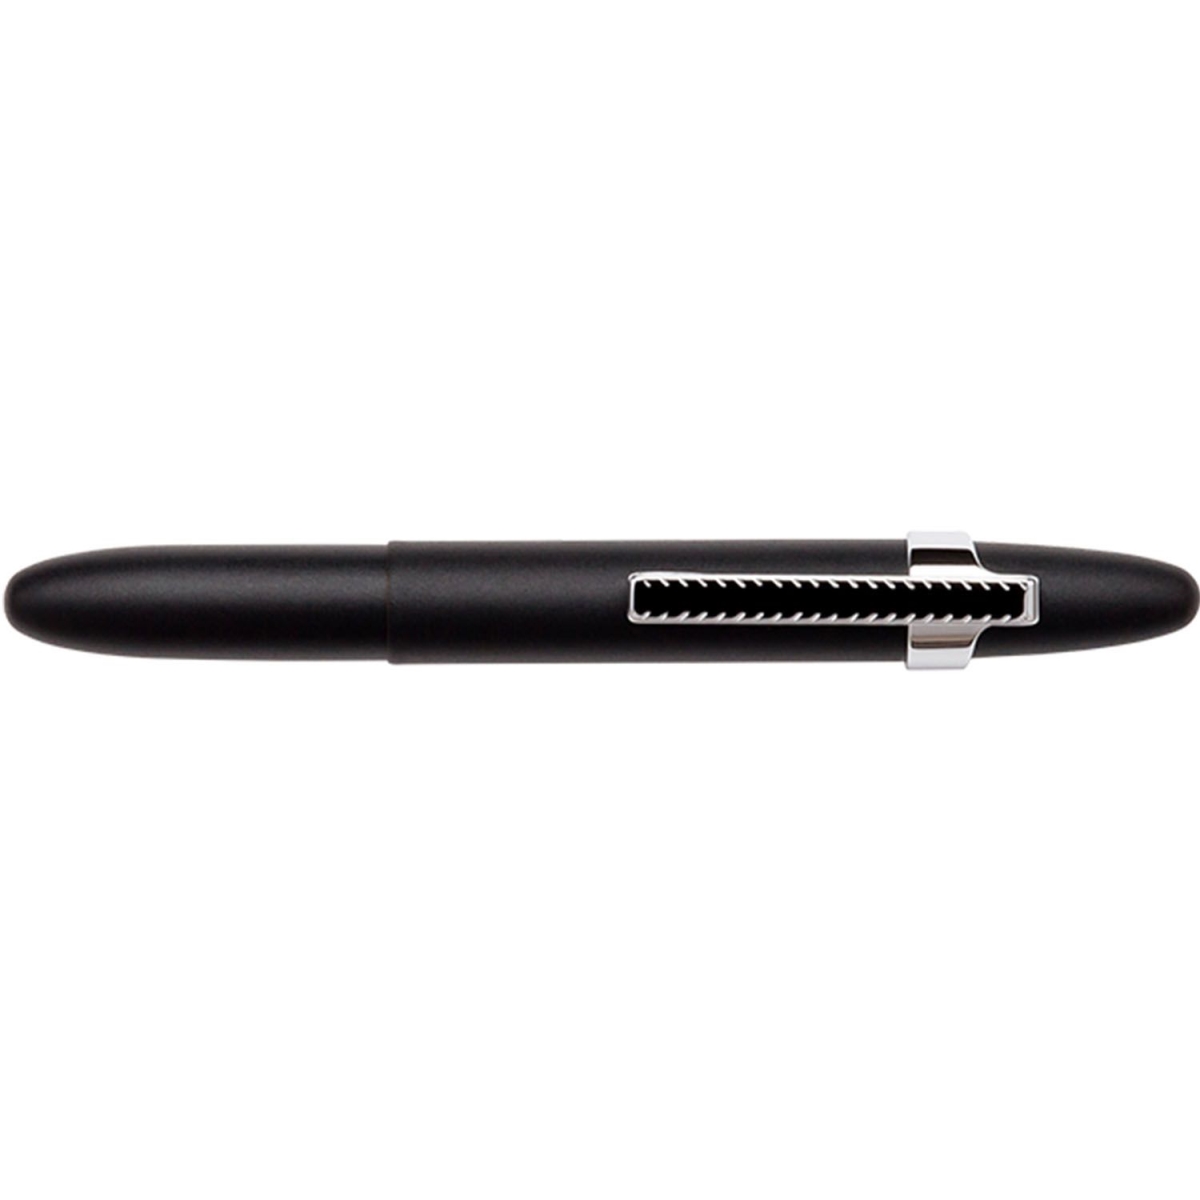 Fis-400bc-cl 2019 Matte Black Bullet Space Pen With Chrome Finger Grip & Clip